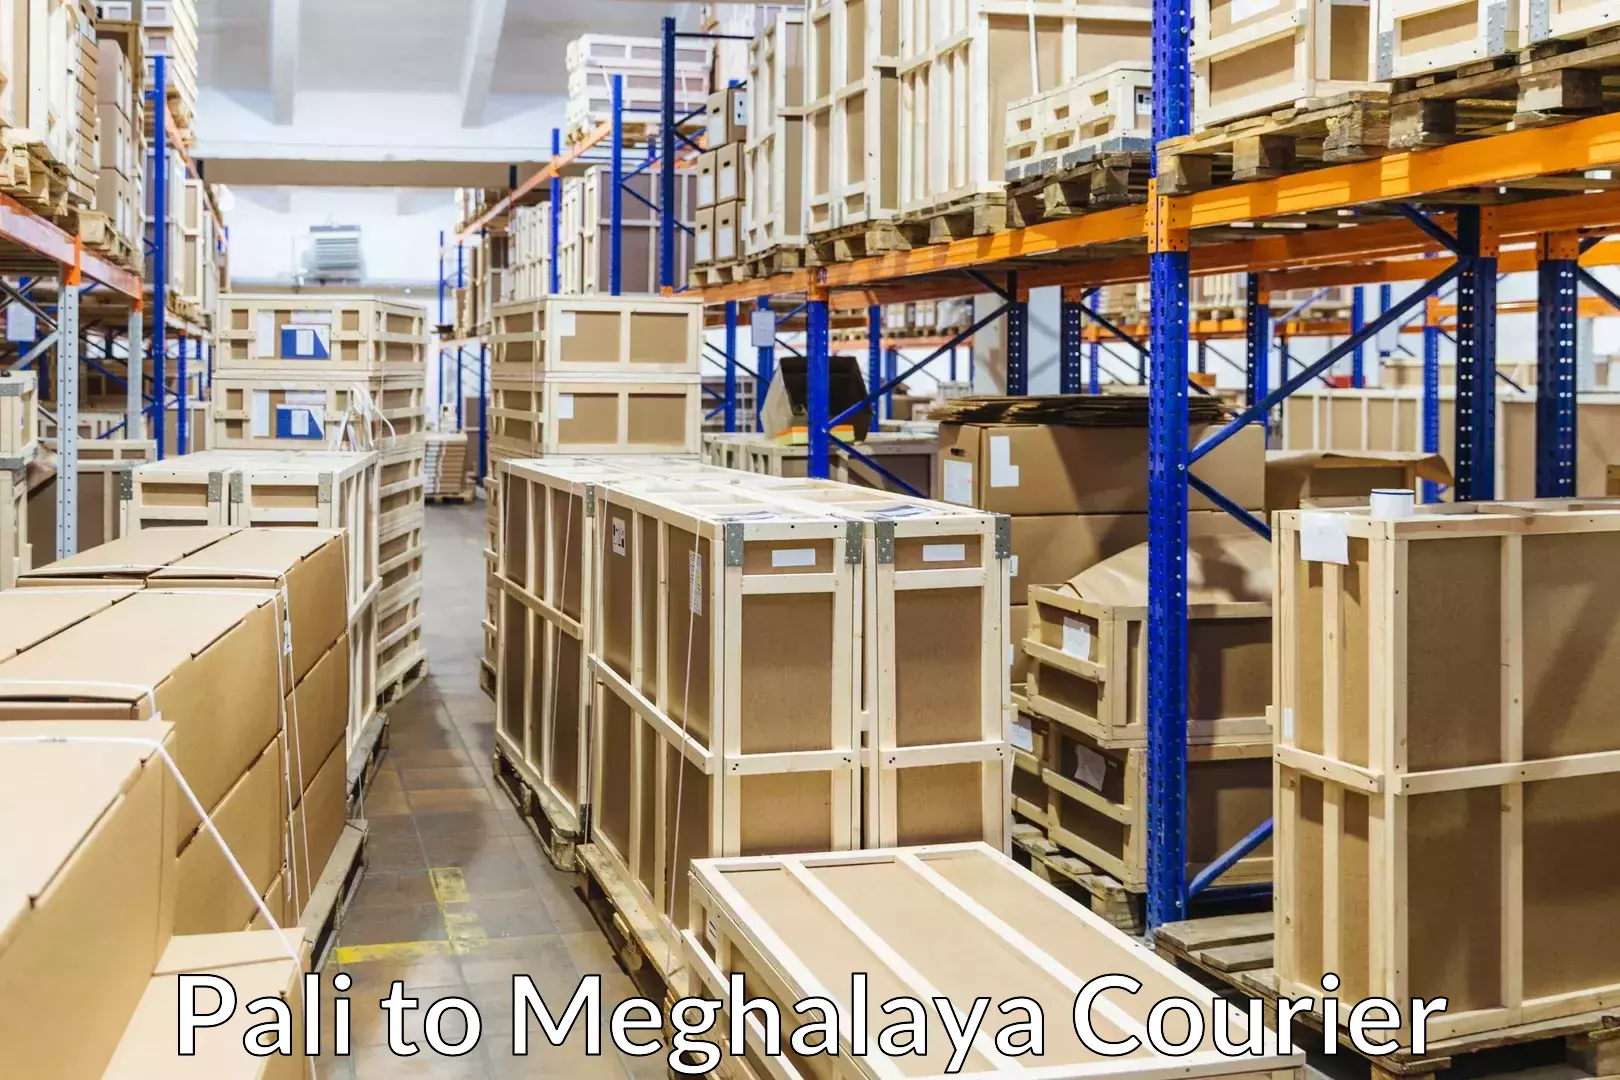 Skilled furniture transporters Pali to Meghalaya